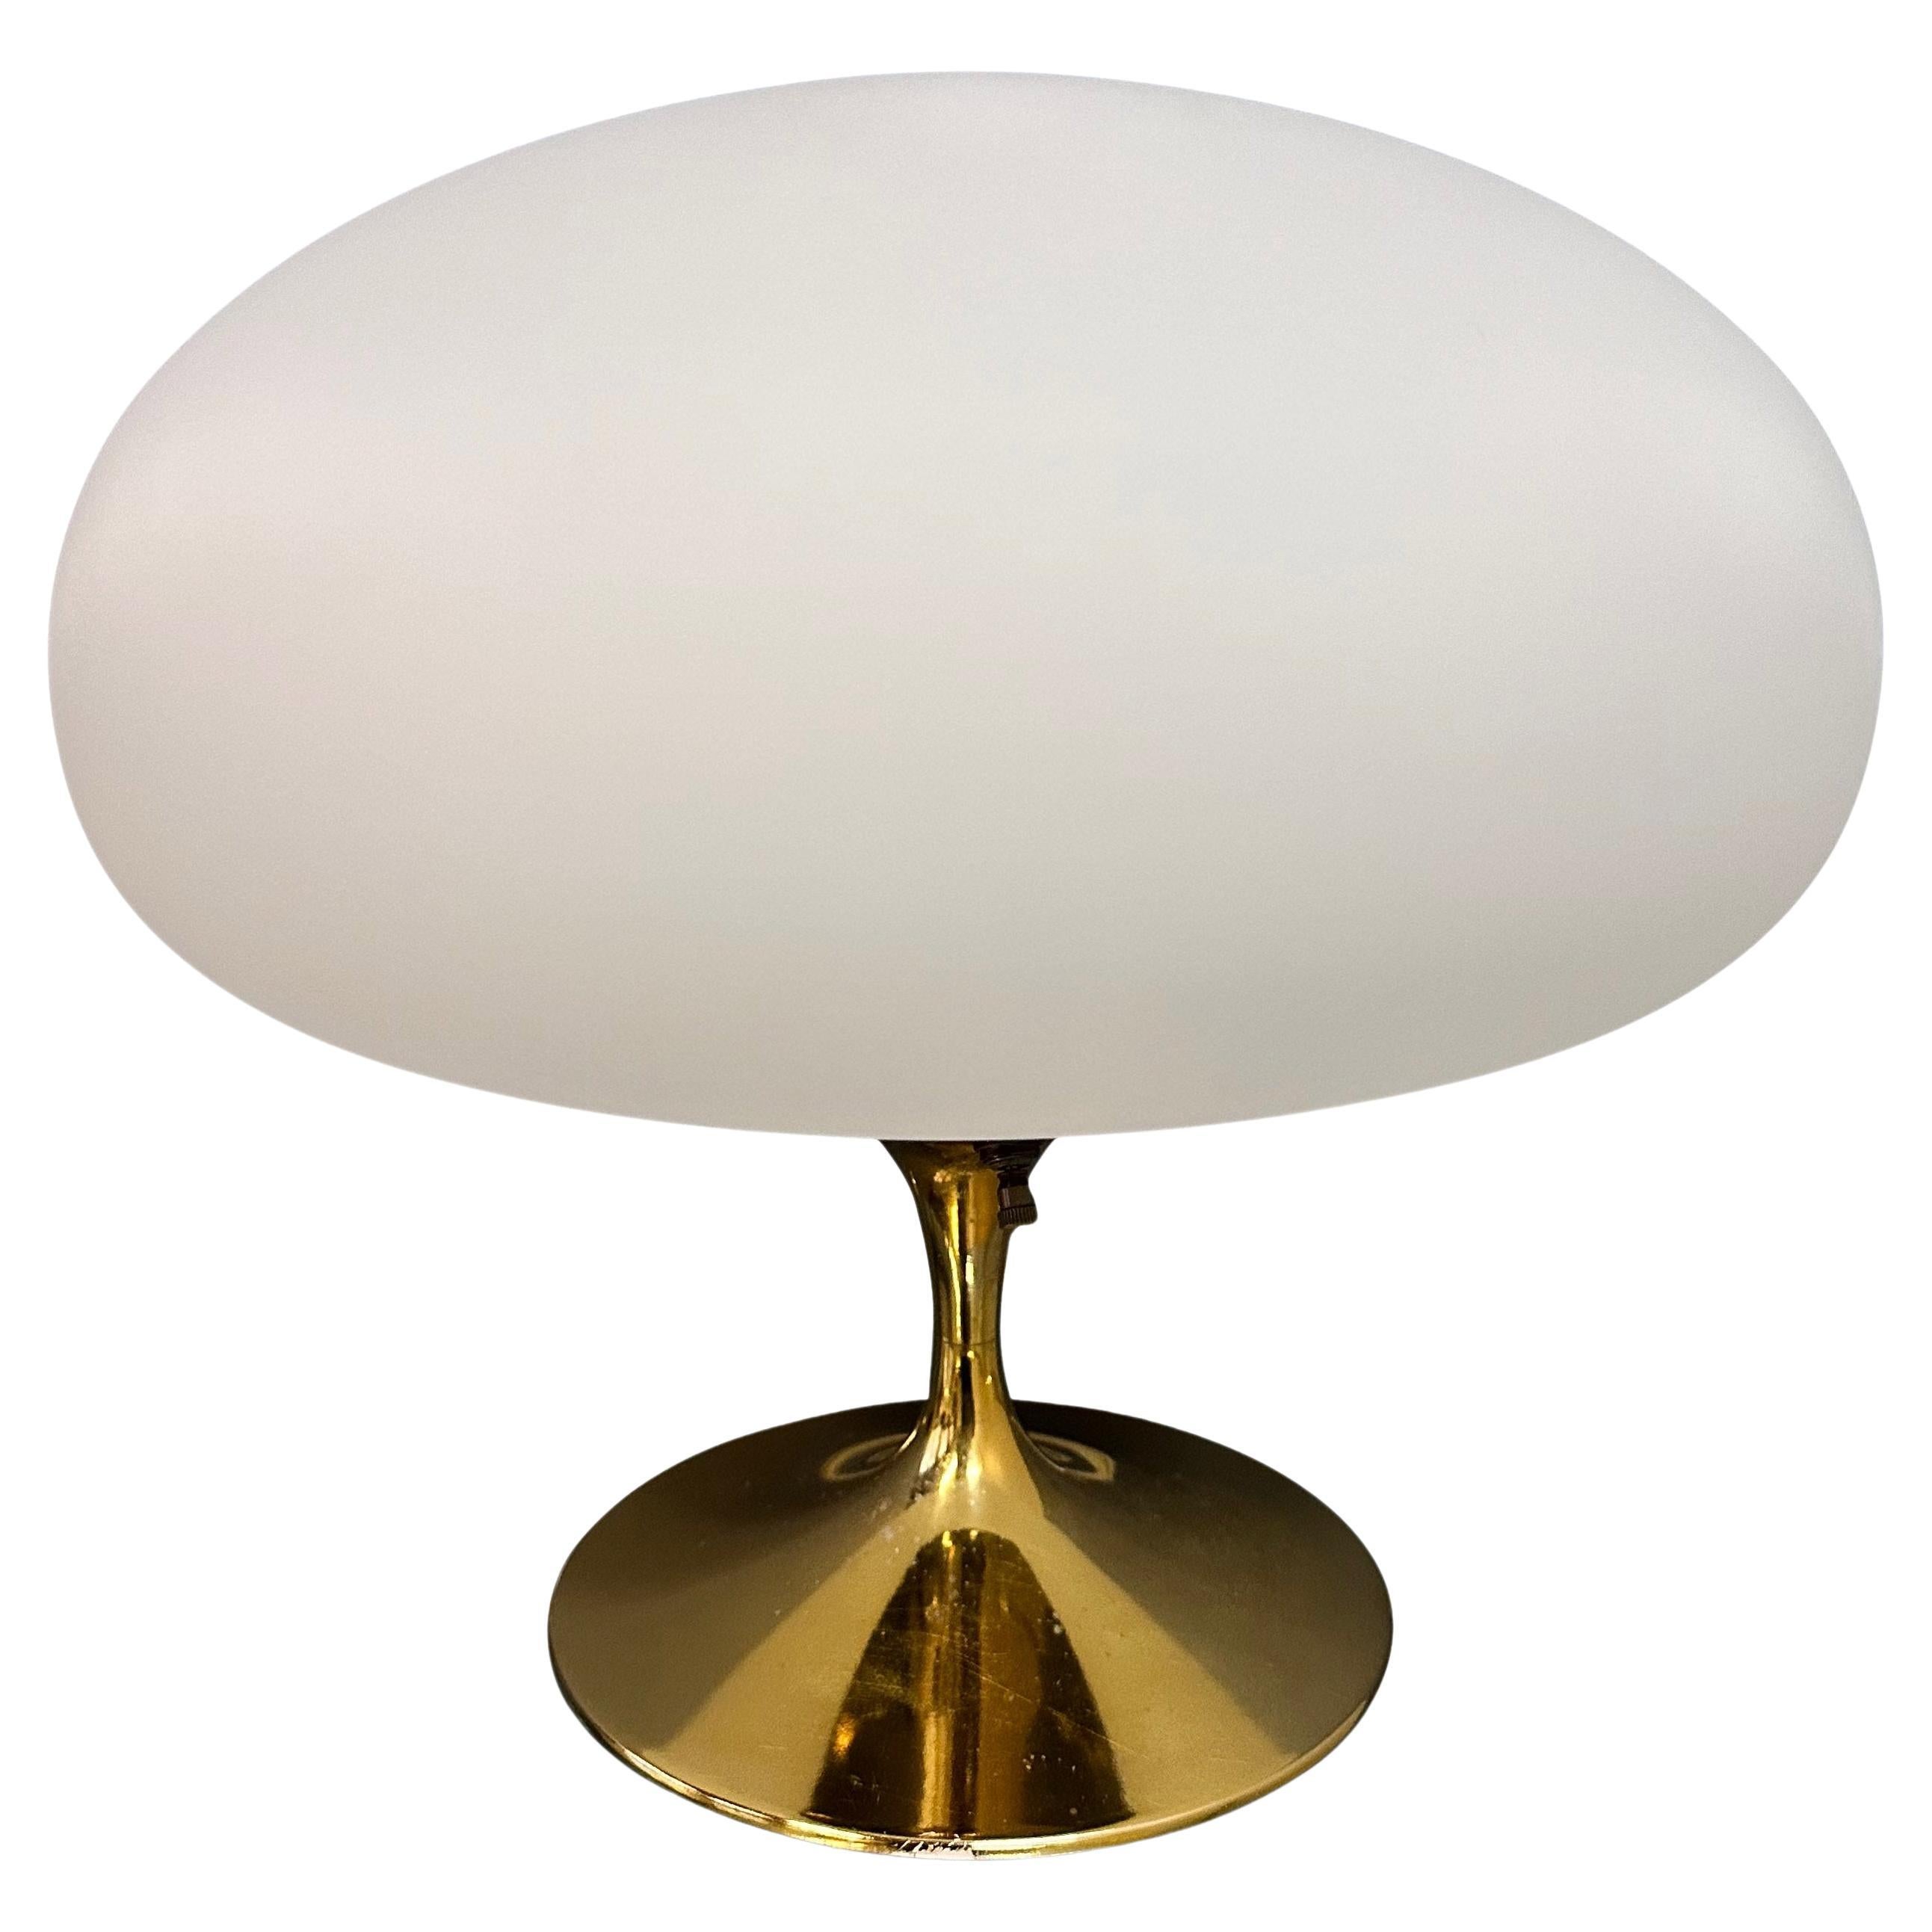 Lampe champignon en laiton par Laurel Lamp Company